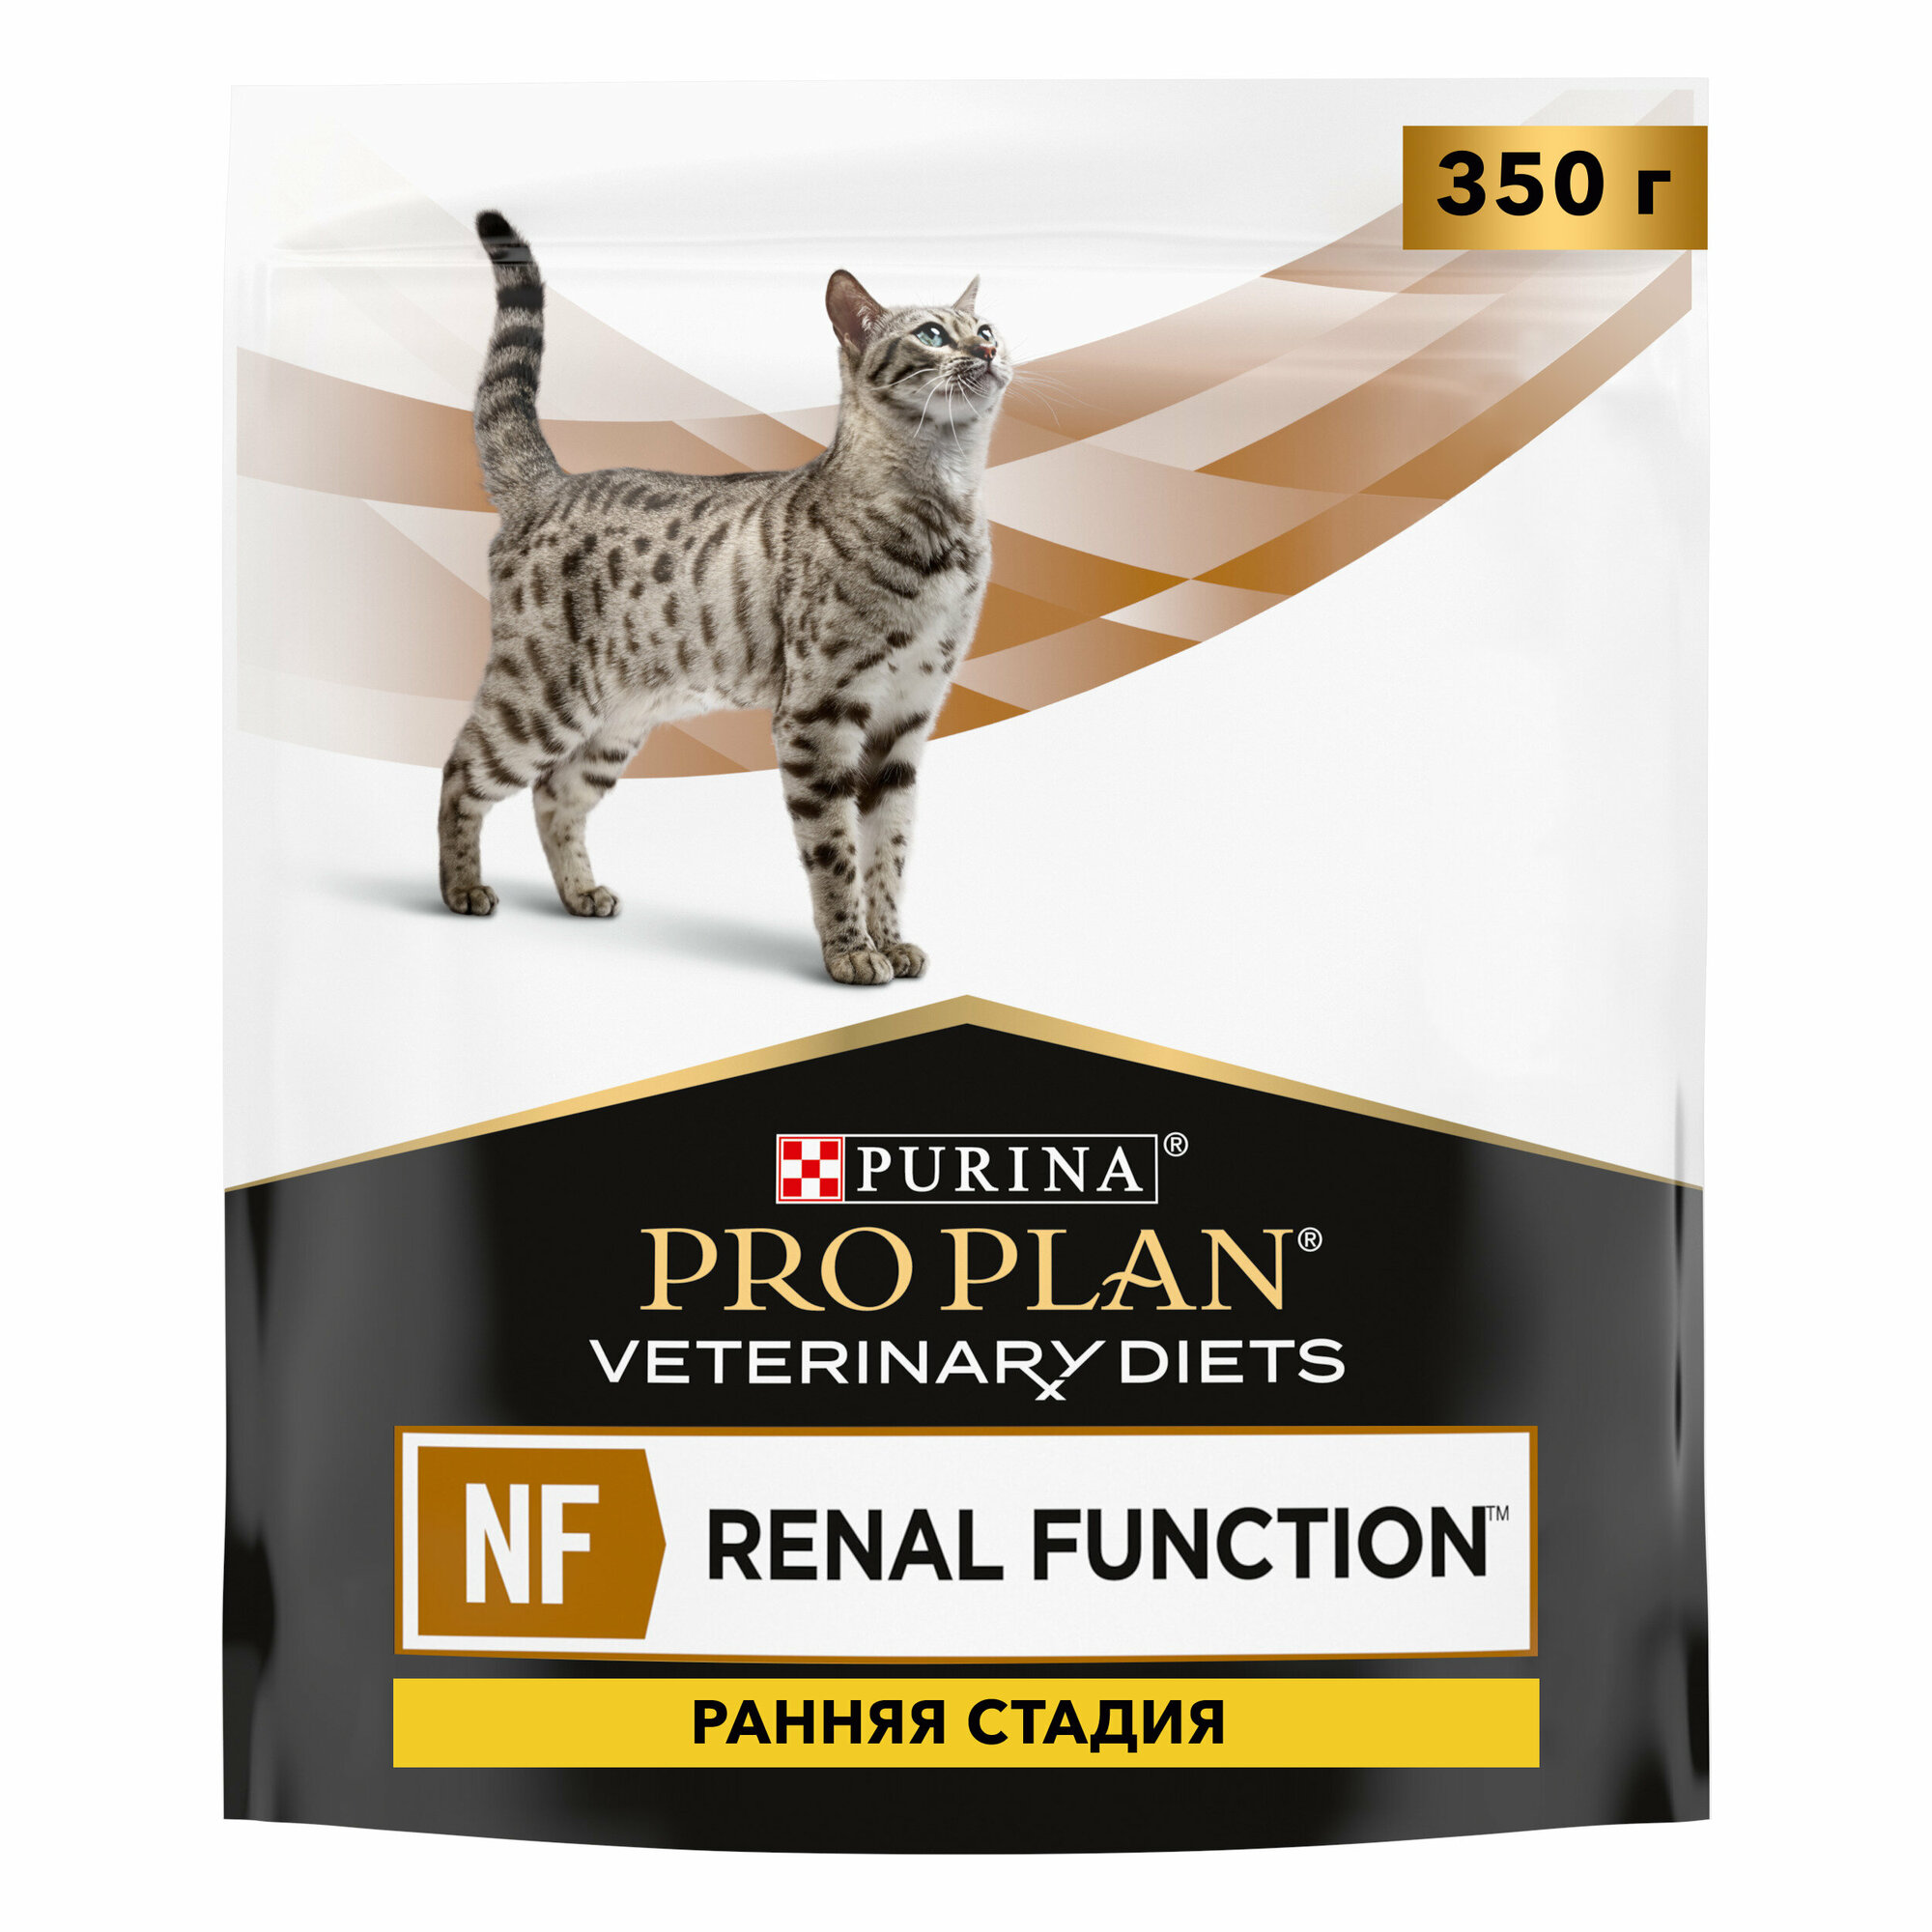 Сухой корм для кошек PRO PLAN VETERINARY DIETS NF Renal Function Early care (Начальная стадия) для поддержания функции почек при хронической почечной недостаточности, 350 г